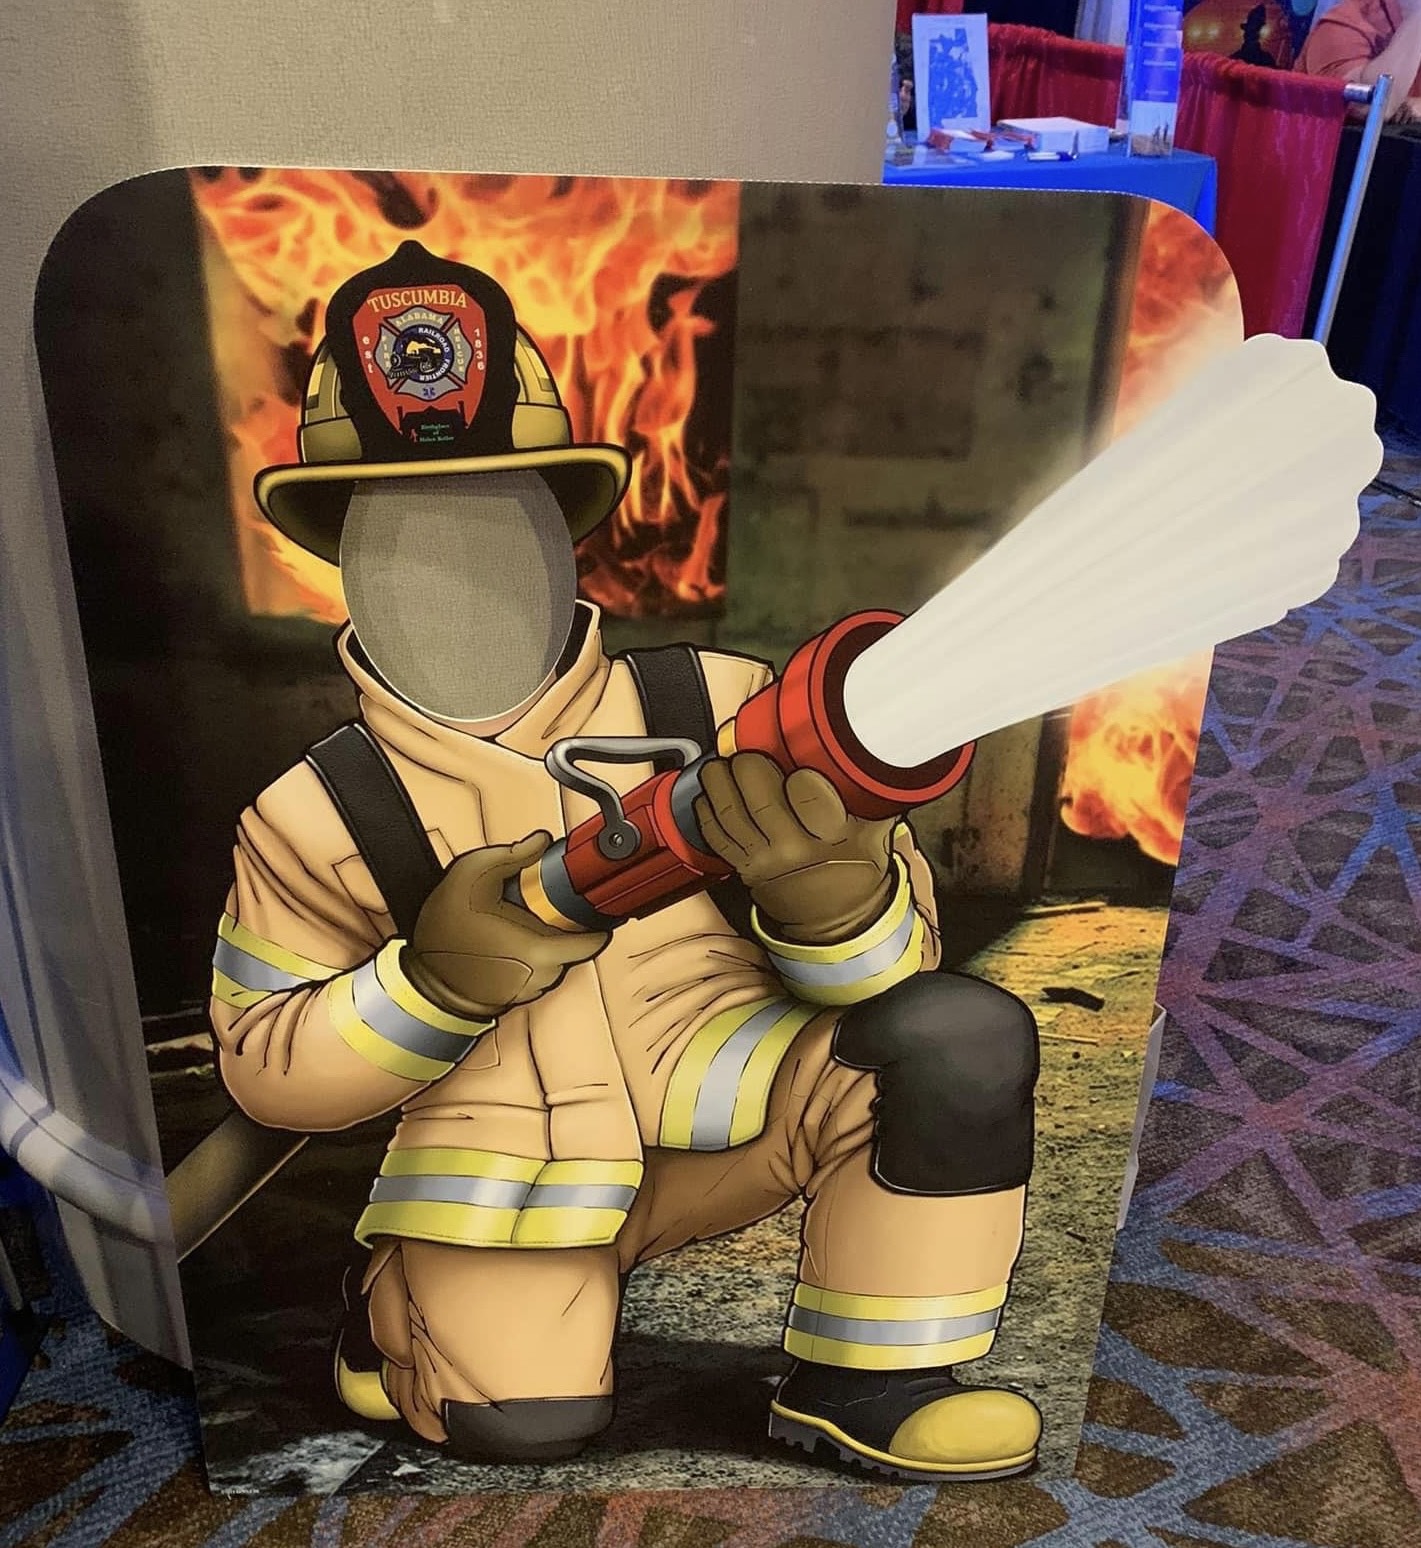 Fireman standie